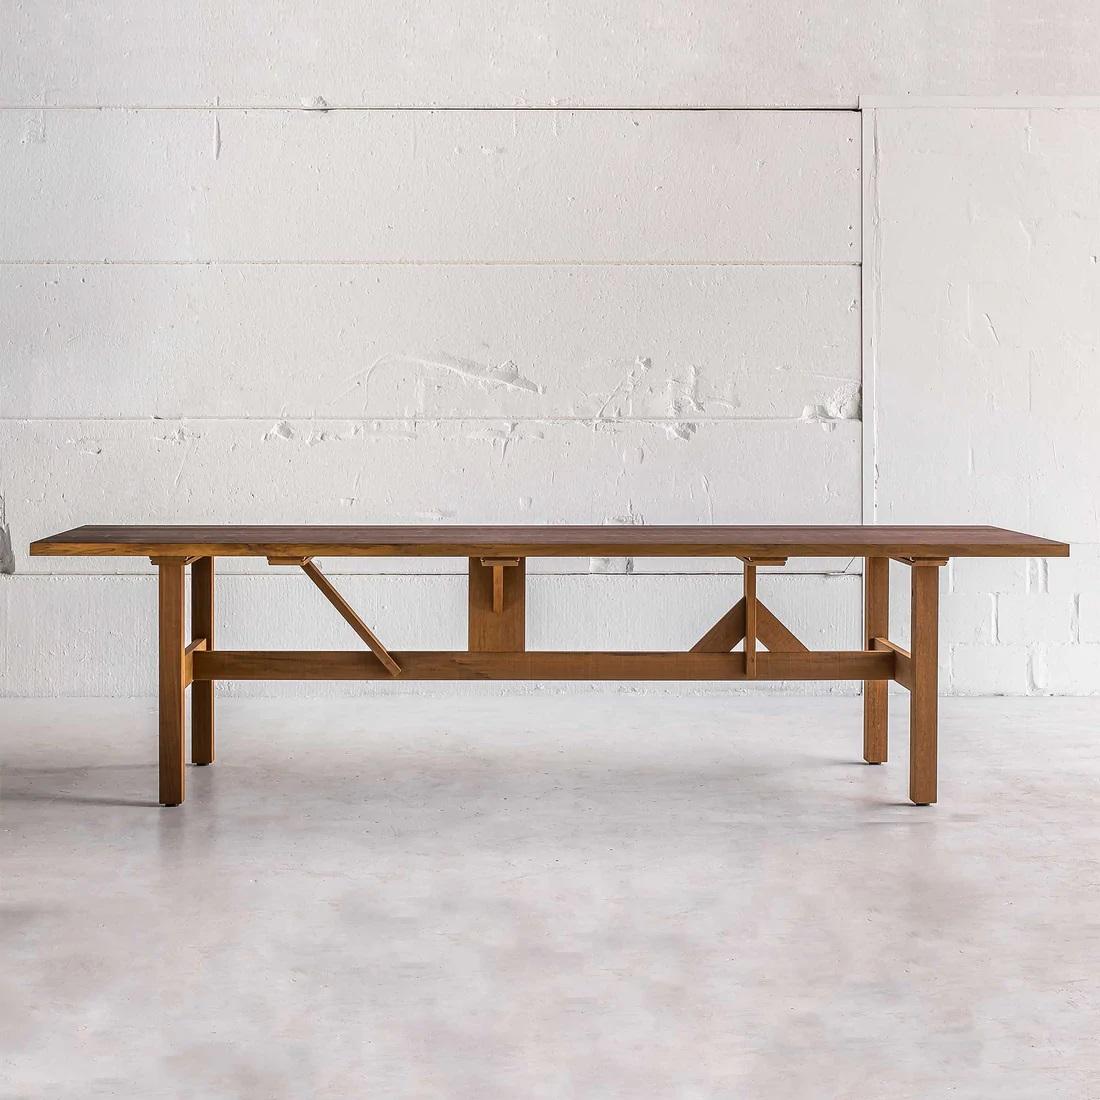 Dieser Outdoor-Tisch ist aus massivem Fraké gefertigt. Jede Befestigung des Tischfußes ist so konzipiert, dass sie maximale Stabilität gewährleistet und gleichzeitig zu seiner außergewöhnlichen Ästhetik beiträgt.
Aus massivem Fraké-Holz gefertigt